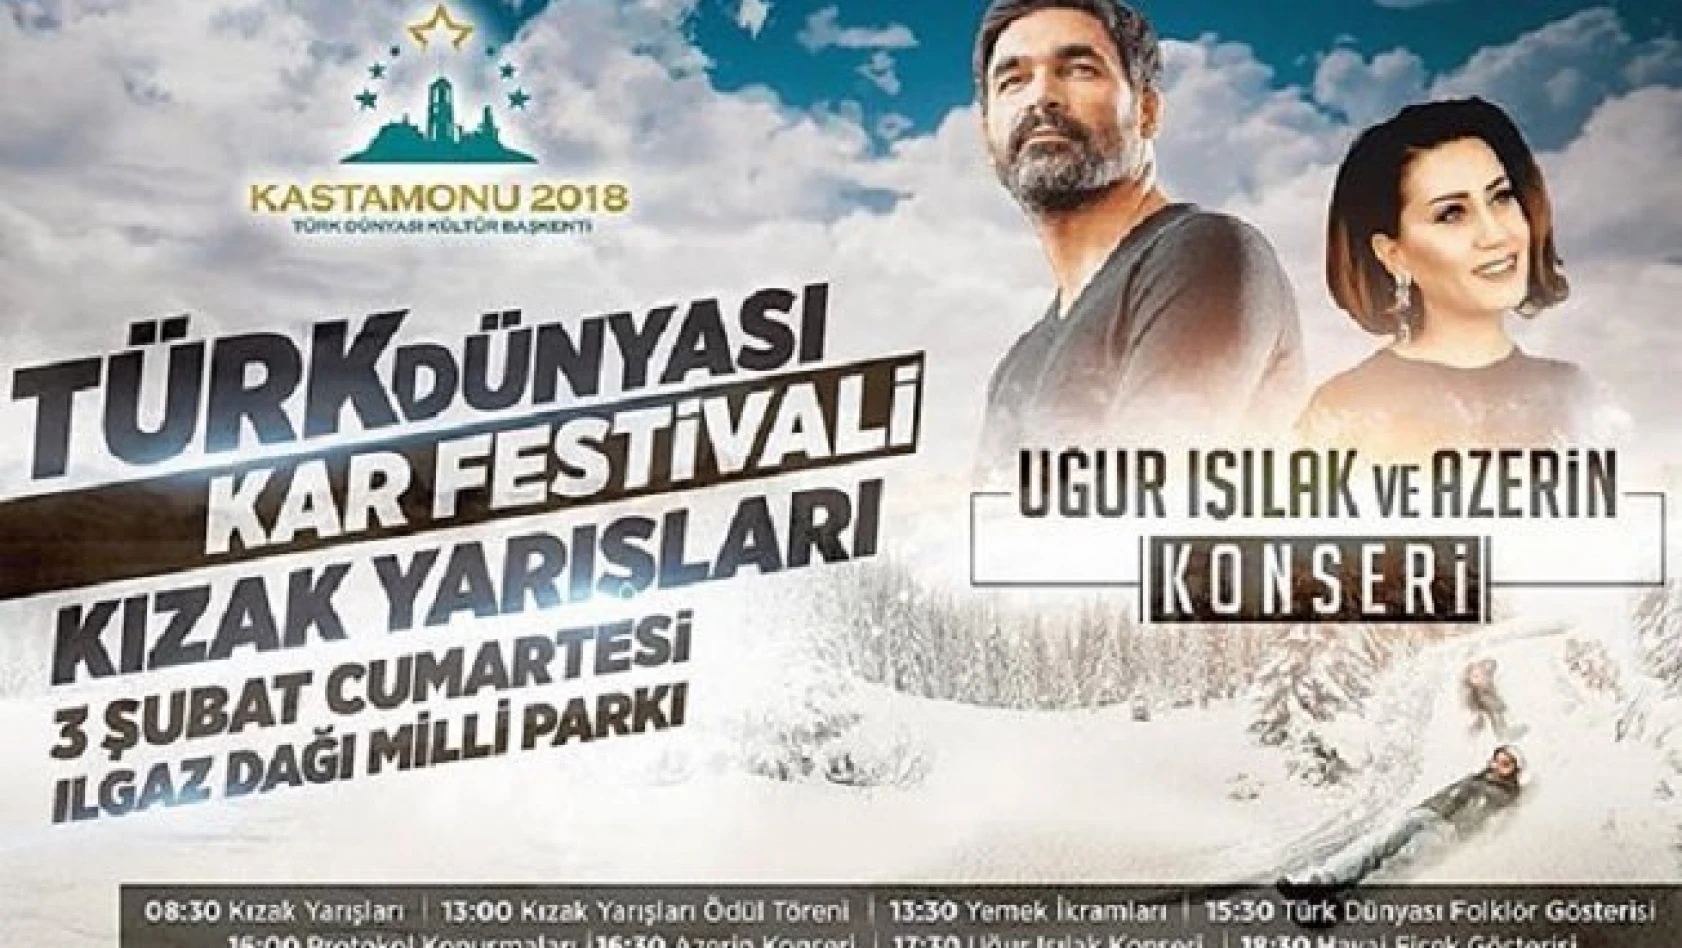 Türk Dünyası Kar Festivali Ilgaz Dağı'nda başlıyor